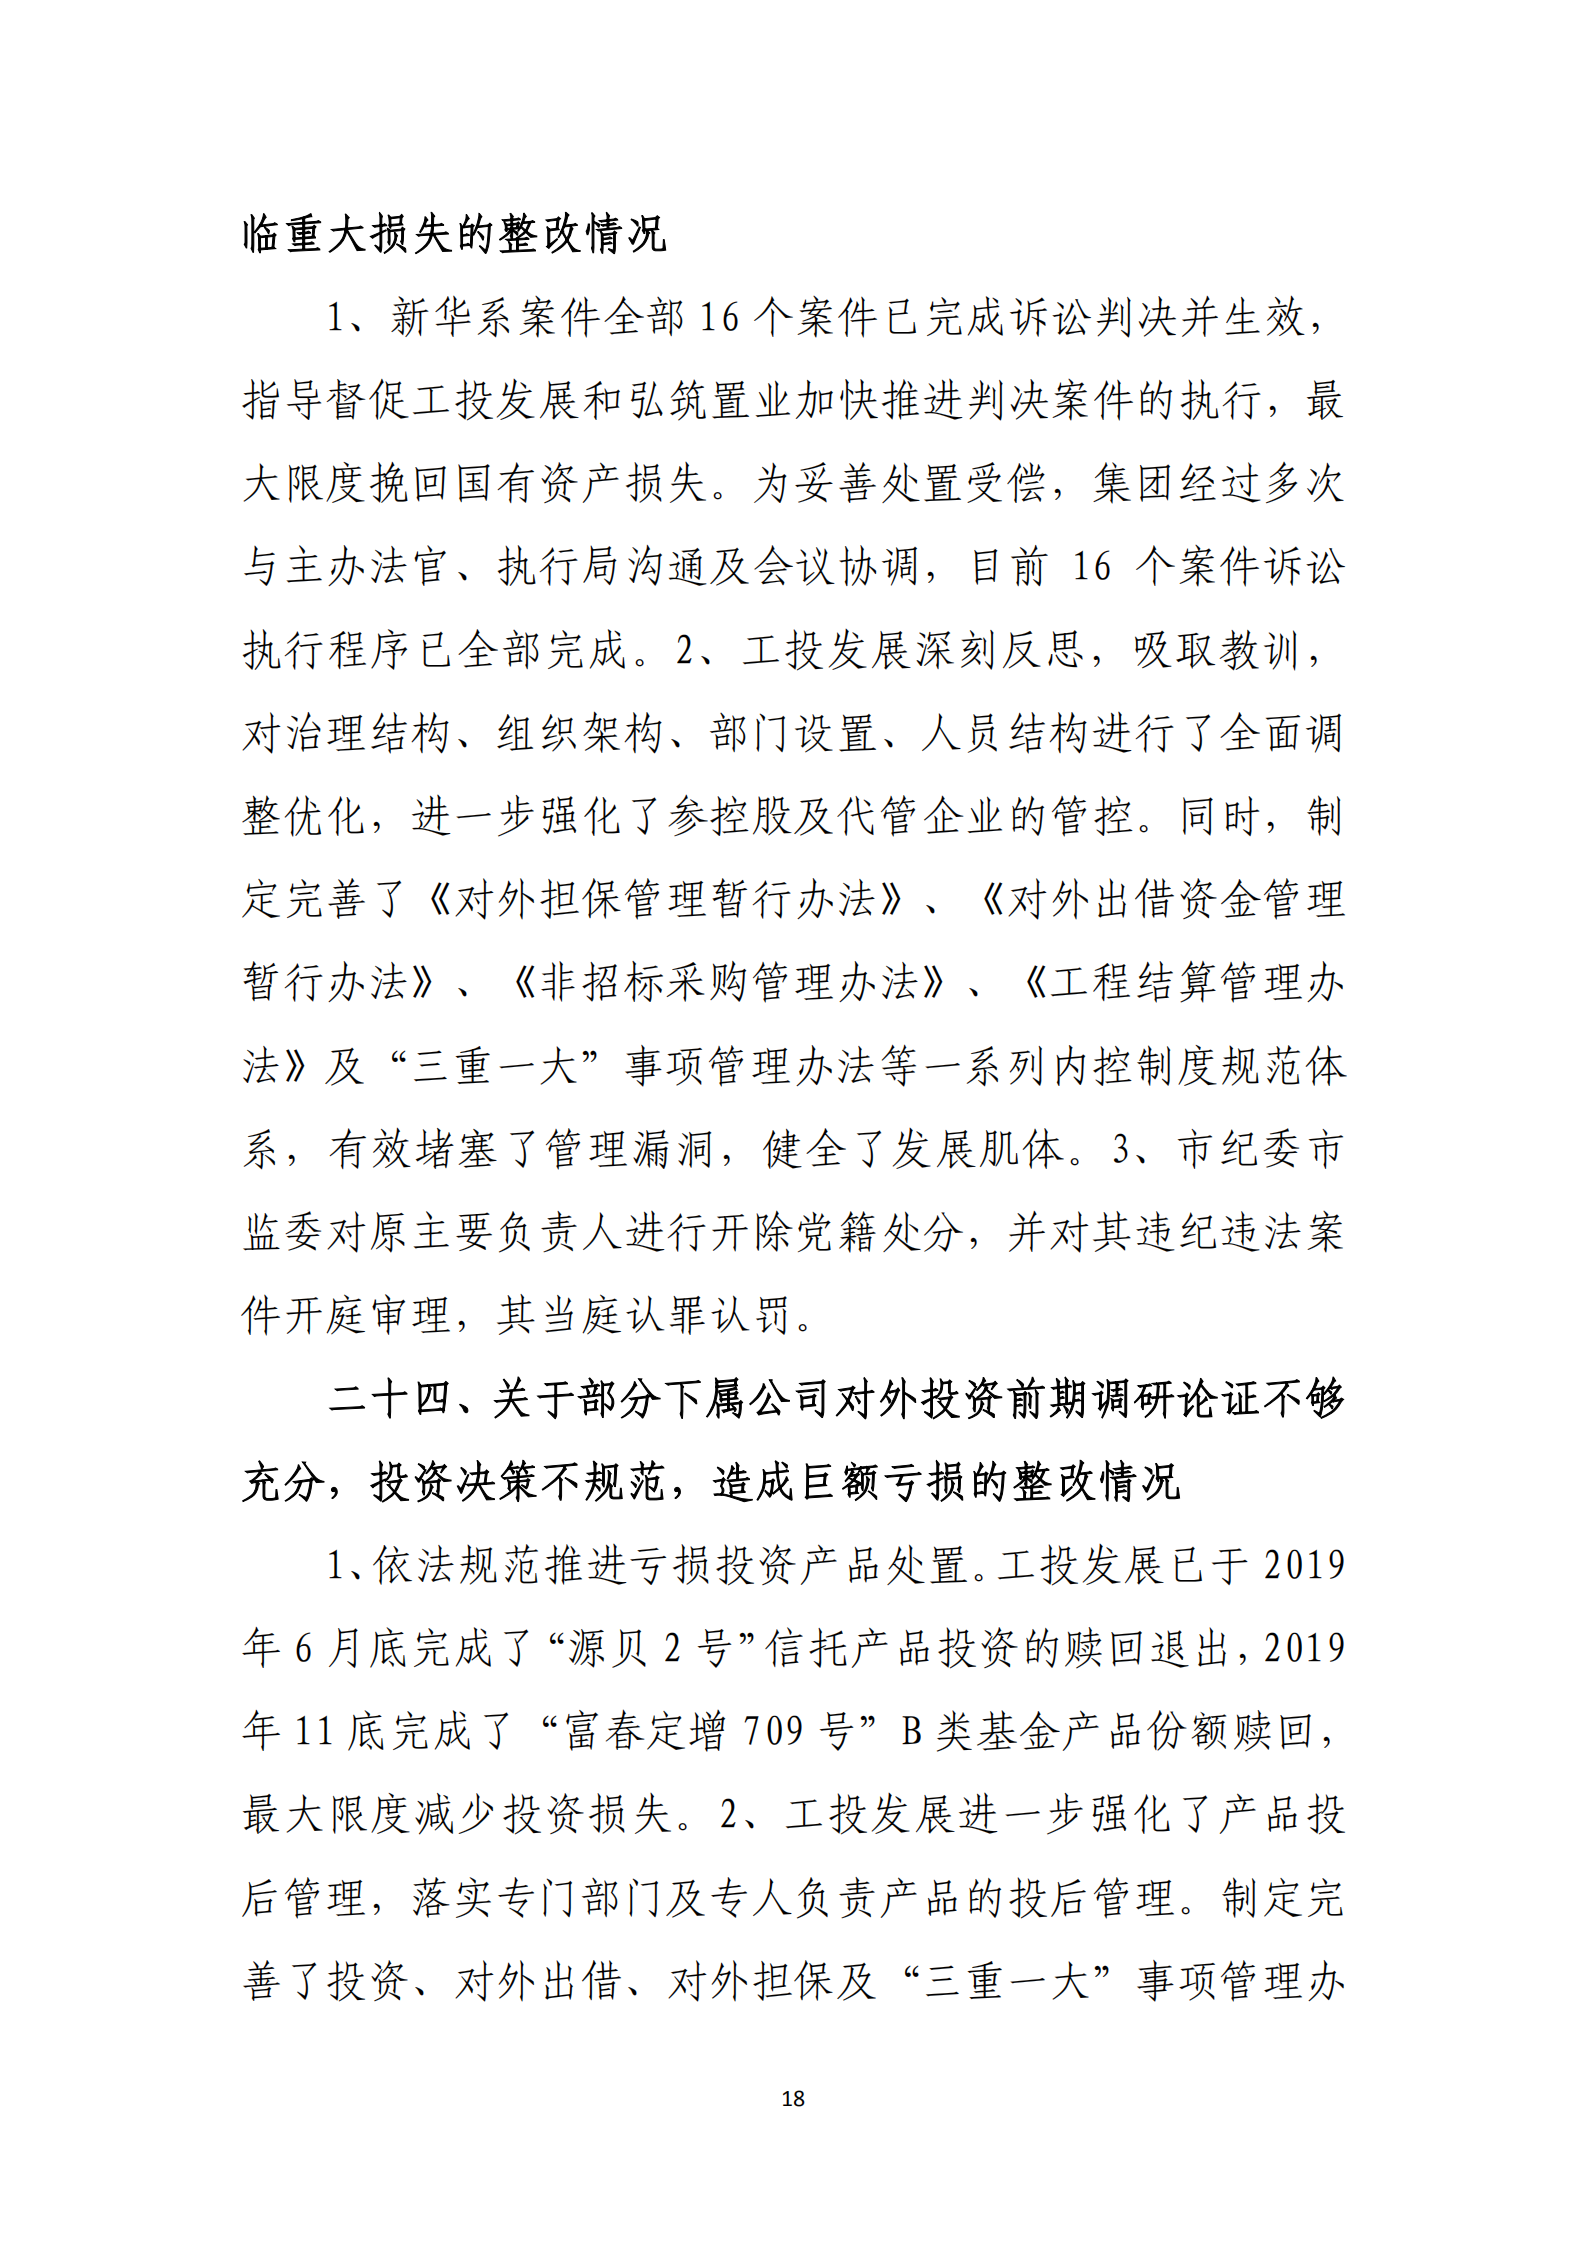 杭实集团党委关于巡察整改情况的通报_17.png